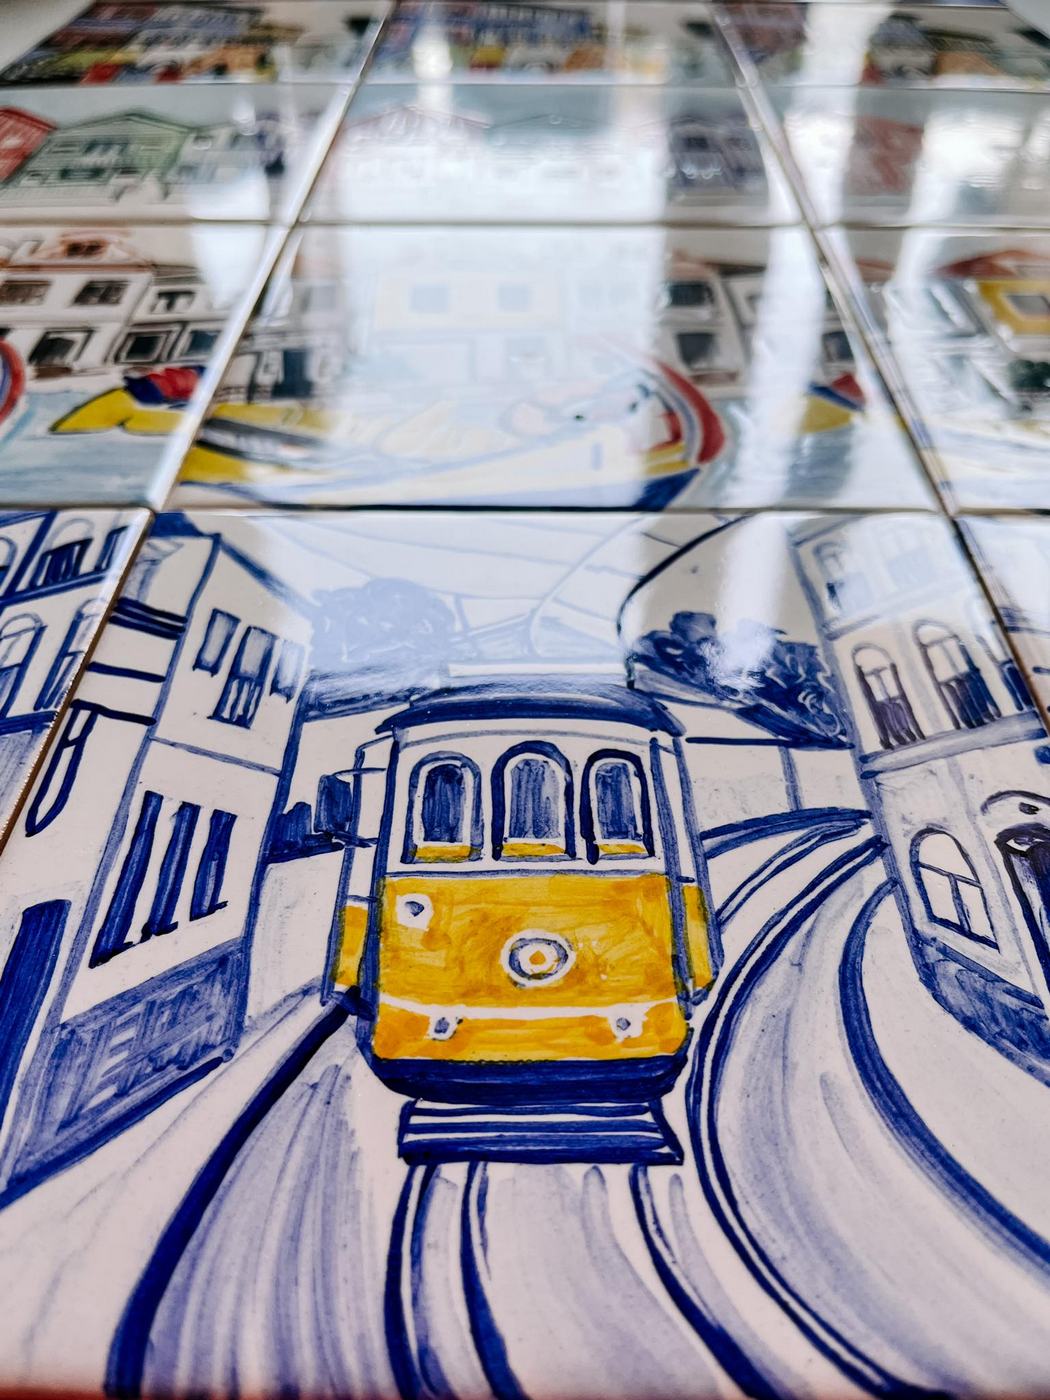 Żółty tramwaj linii 28 namalowany na kafelku ceramicznym